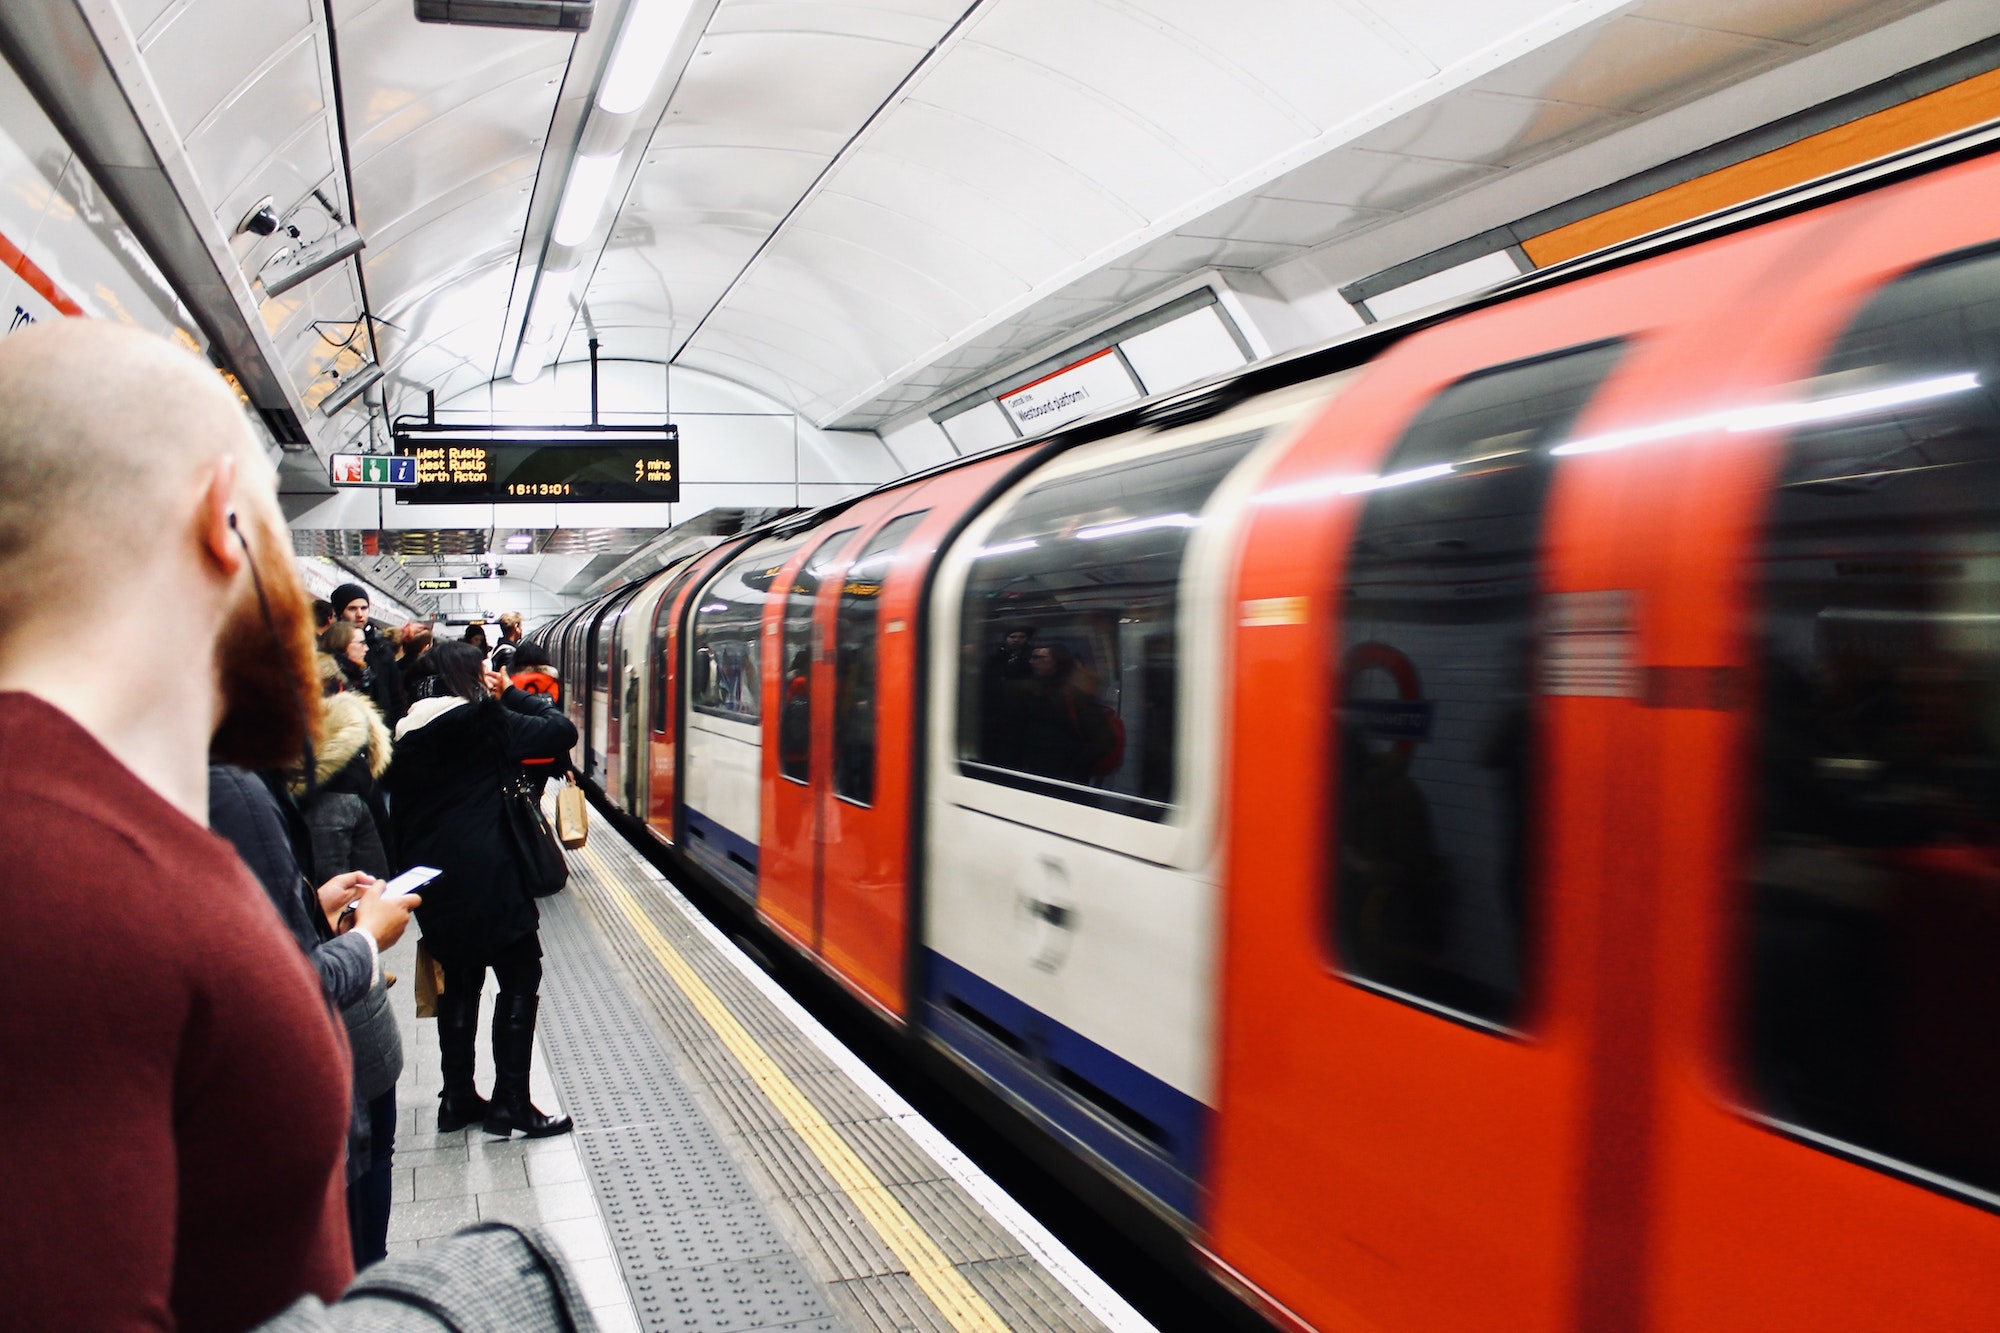 London Tube (Underground)